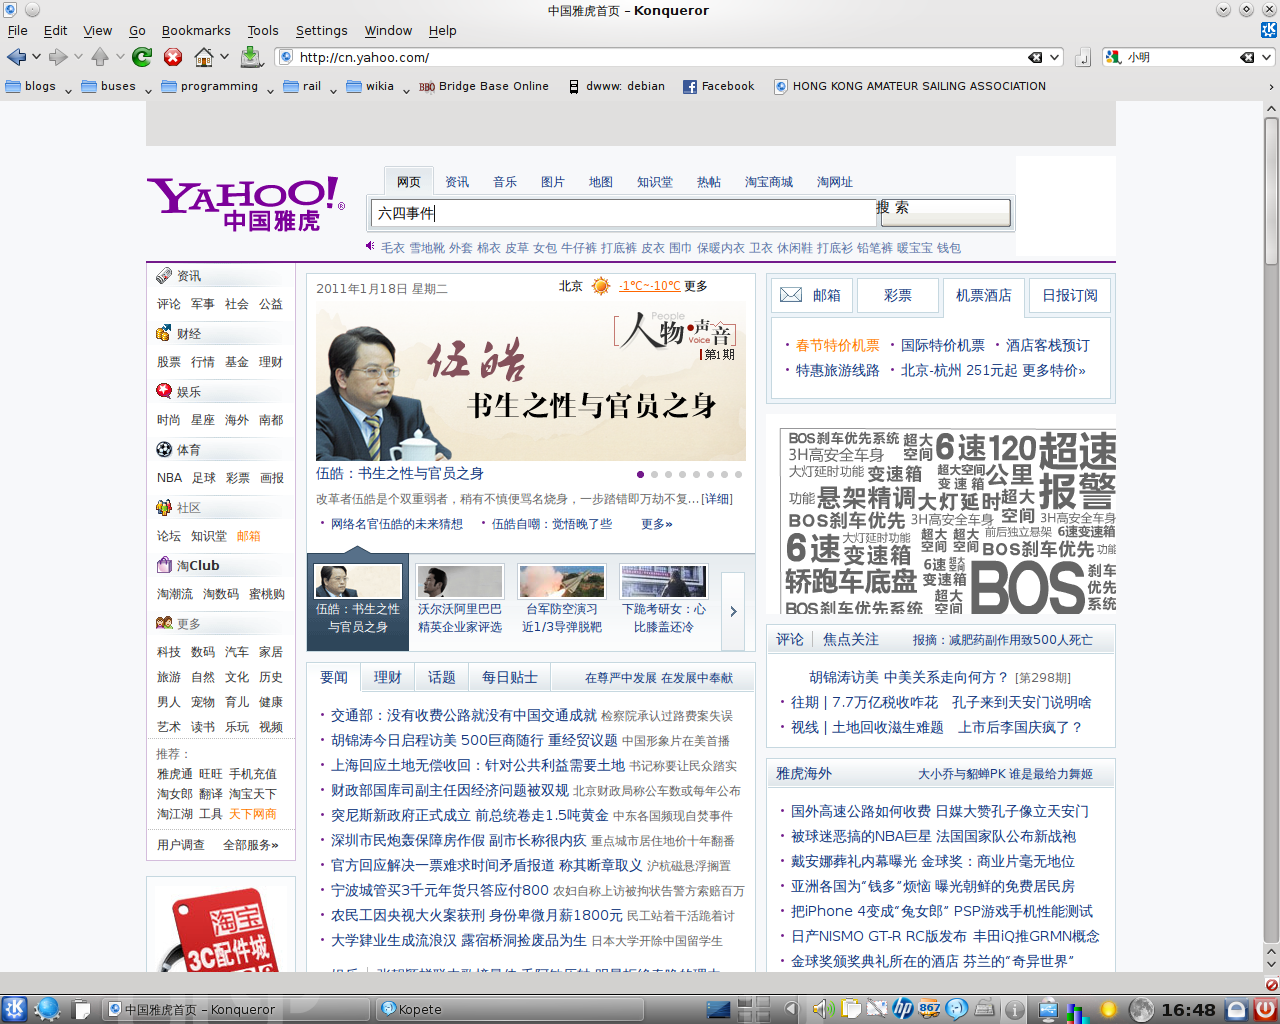 Yahoo! home page